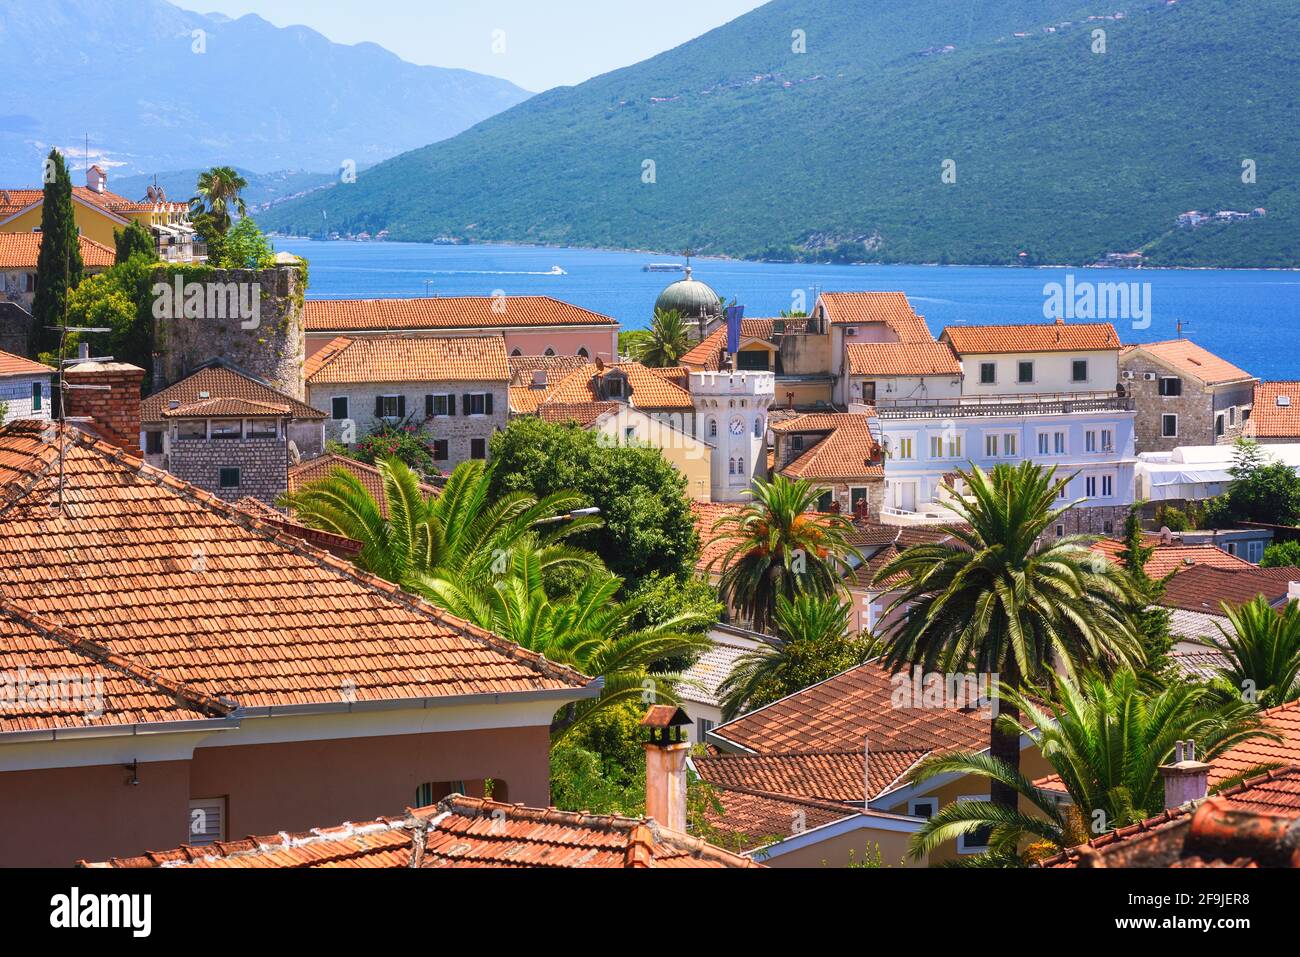 Toits de tuiles rouges de la vieille ville historique de Herceg Novi, baie de Kotor, Monténégro Banque D'Images